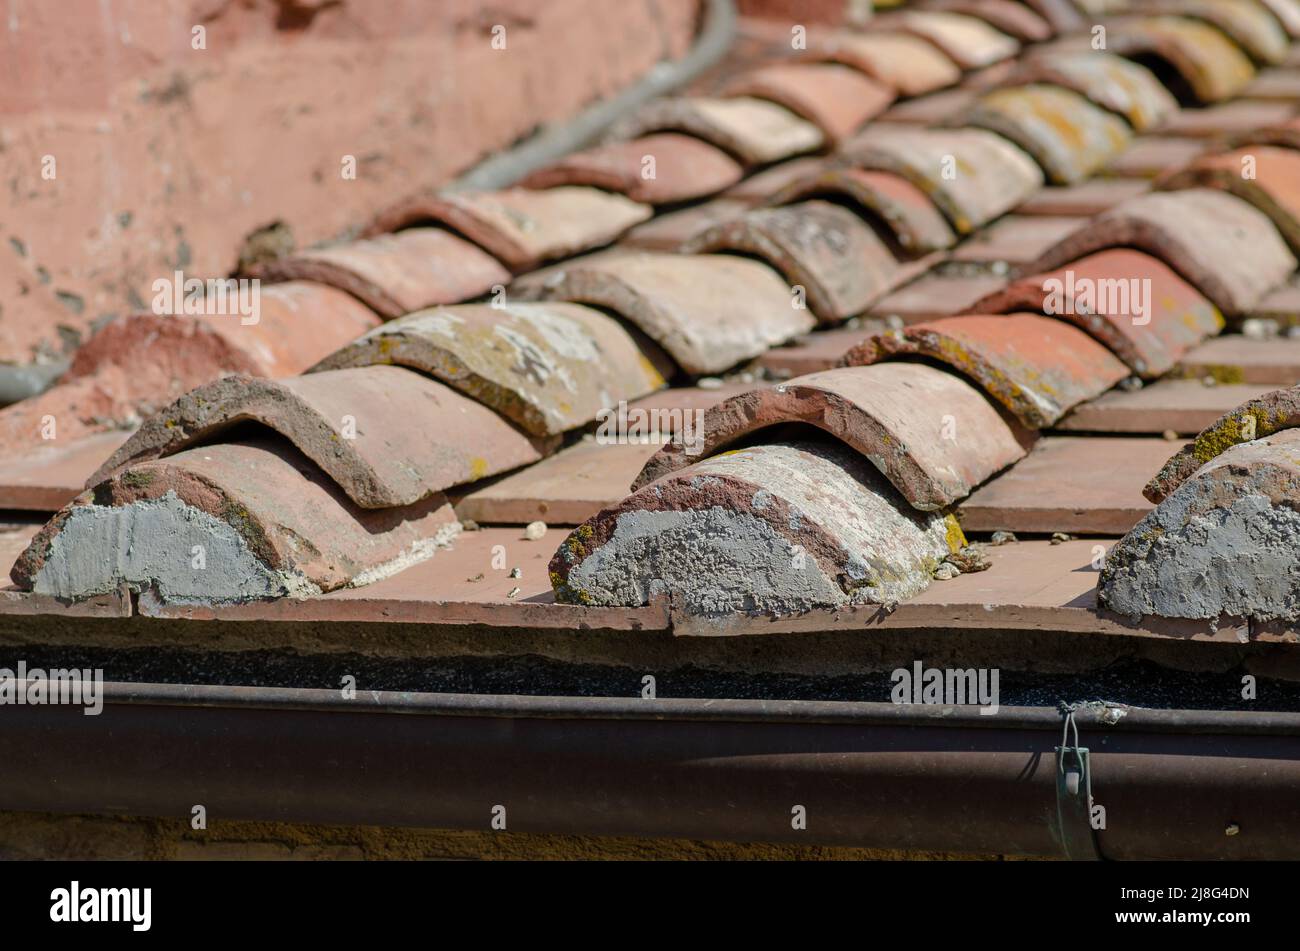 Haus: Gebäude mit Dachschräge mit Ziegelsteinen, Dachrinne aus freiliegendem Blech. Die Schindeln sind aus Lehm, mit einer selbstsichernden Form. Stockfoto